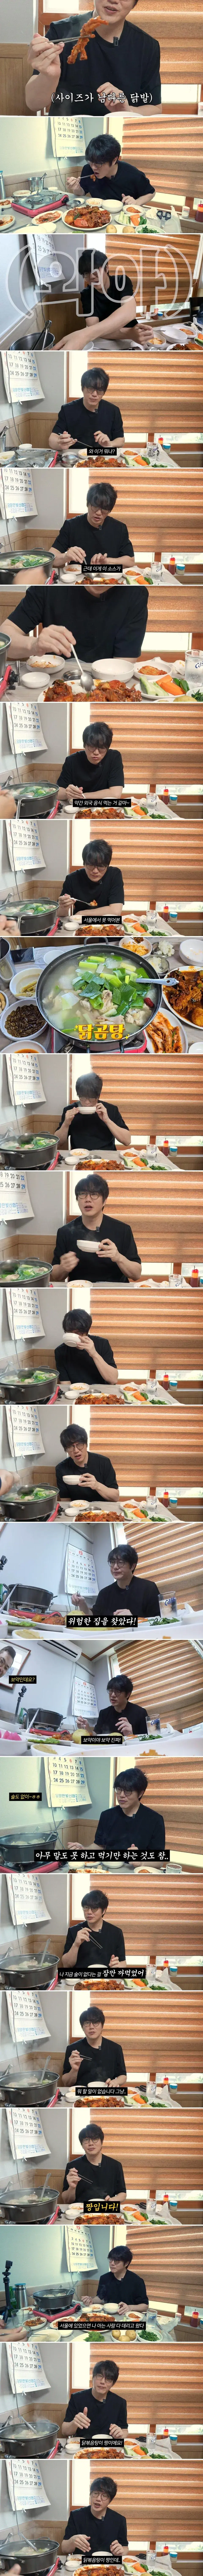 성시경 먹을텐데 극찬한 담양 닭볶음탕 | mbong.kr 엠봉